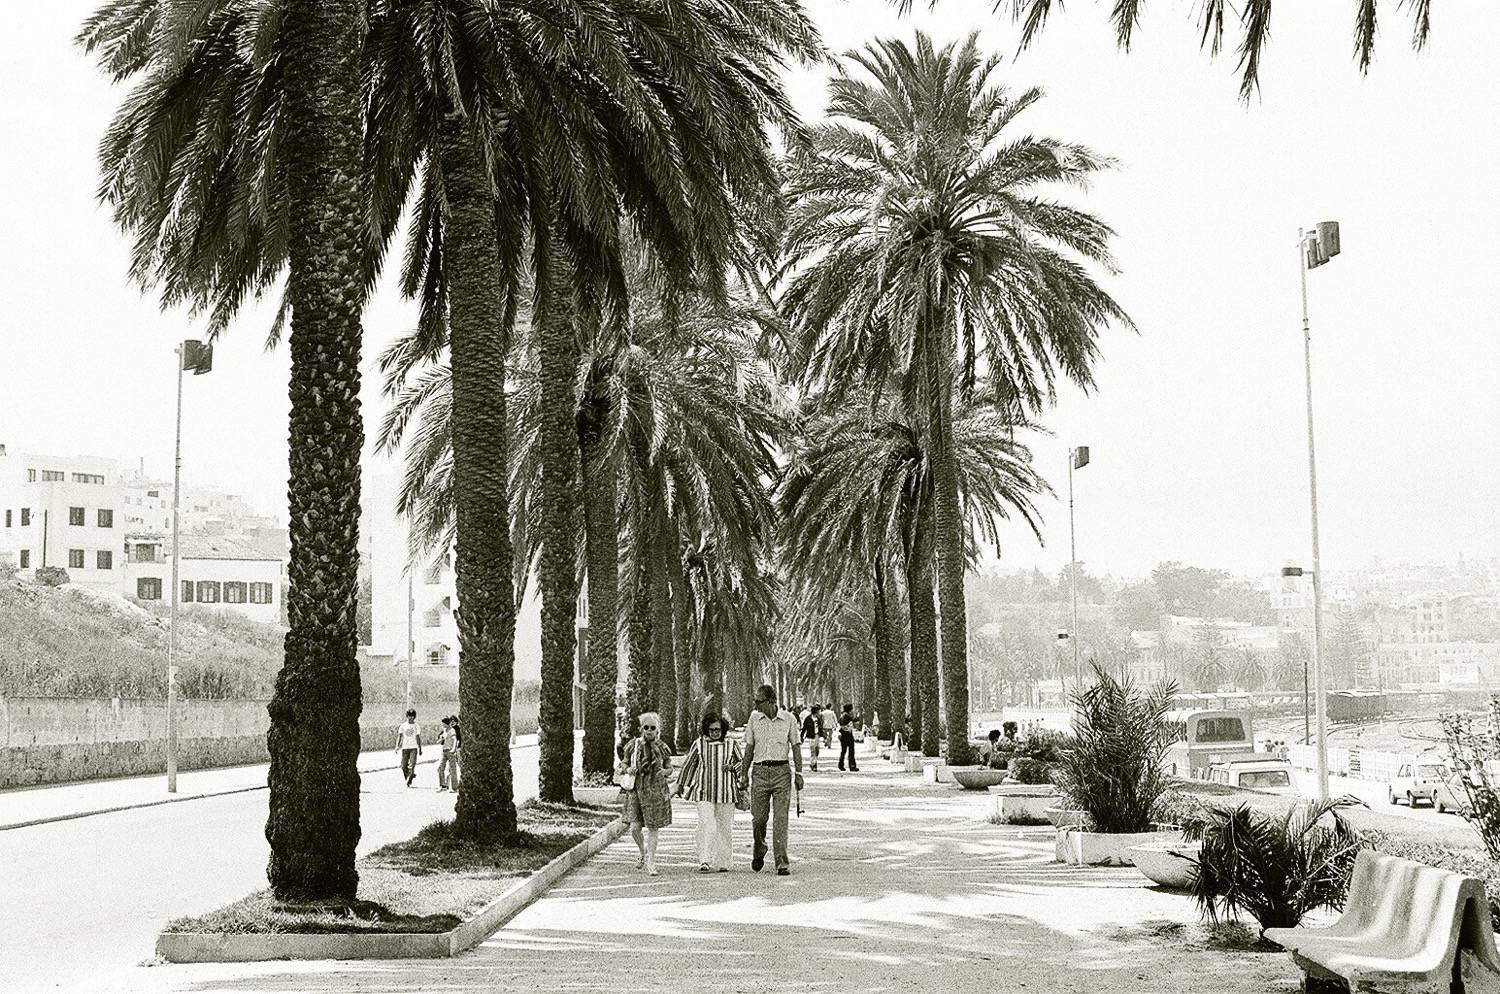 Avenue Mohammed VI - View toward the medina on Avenue Mohamed VI